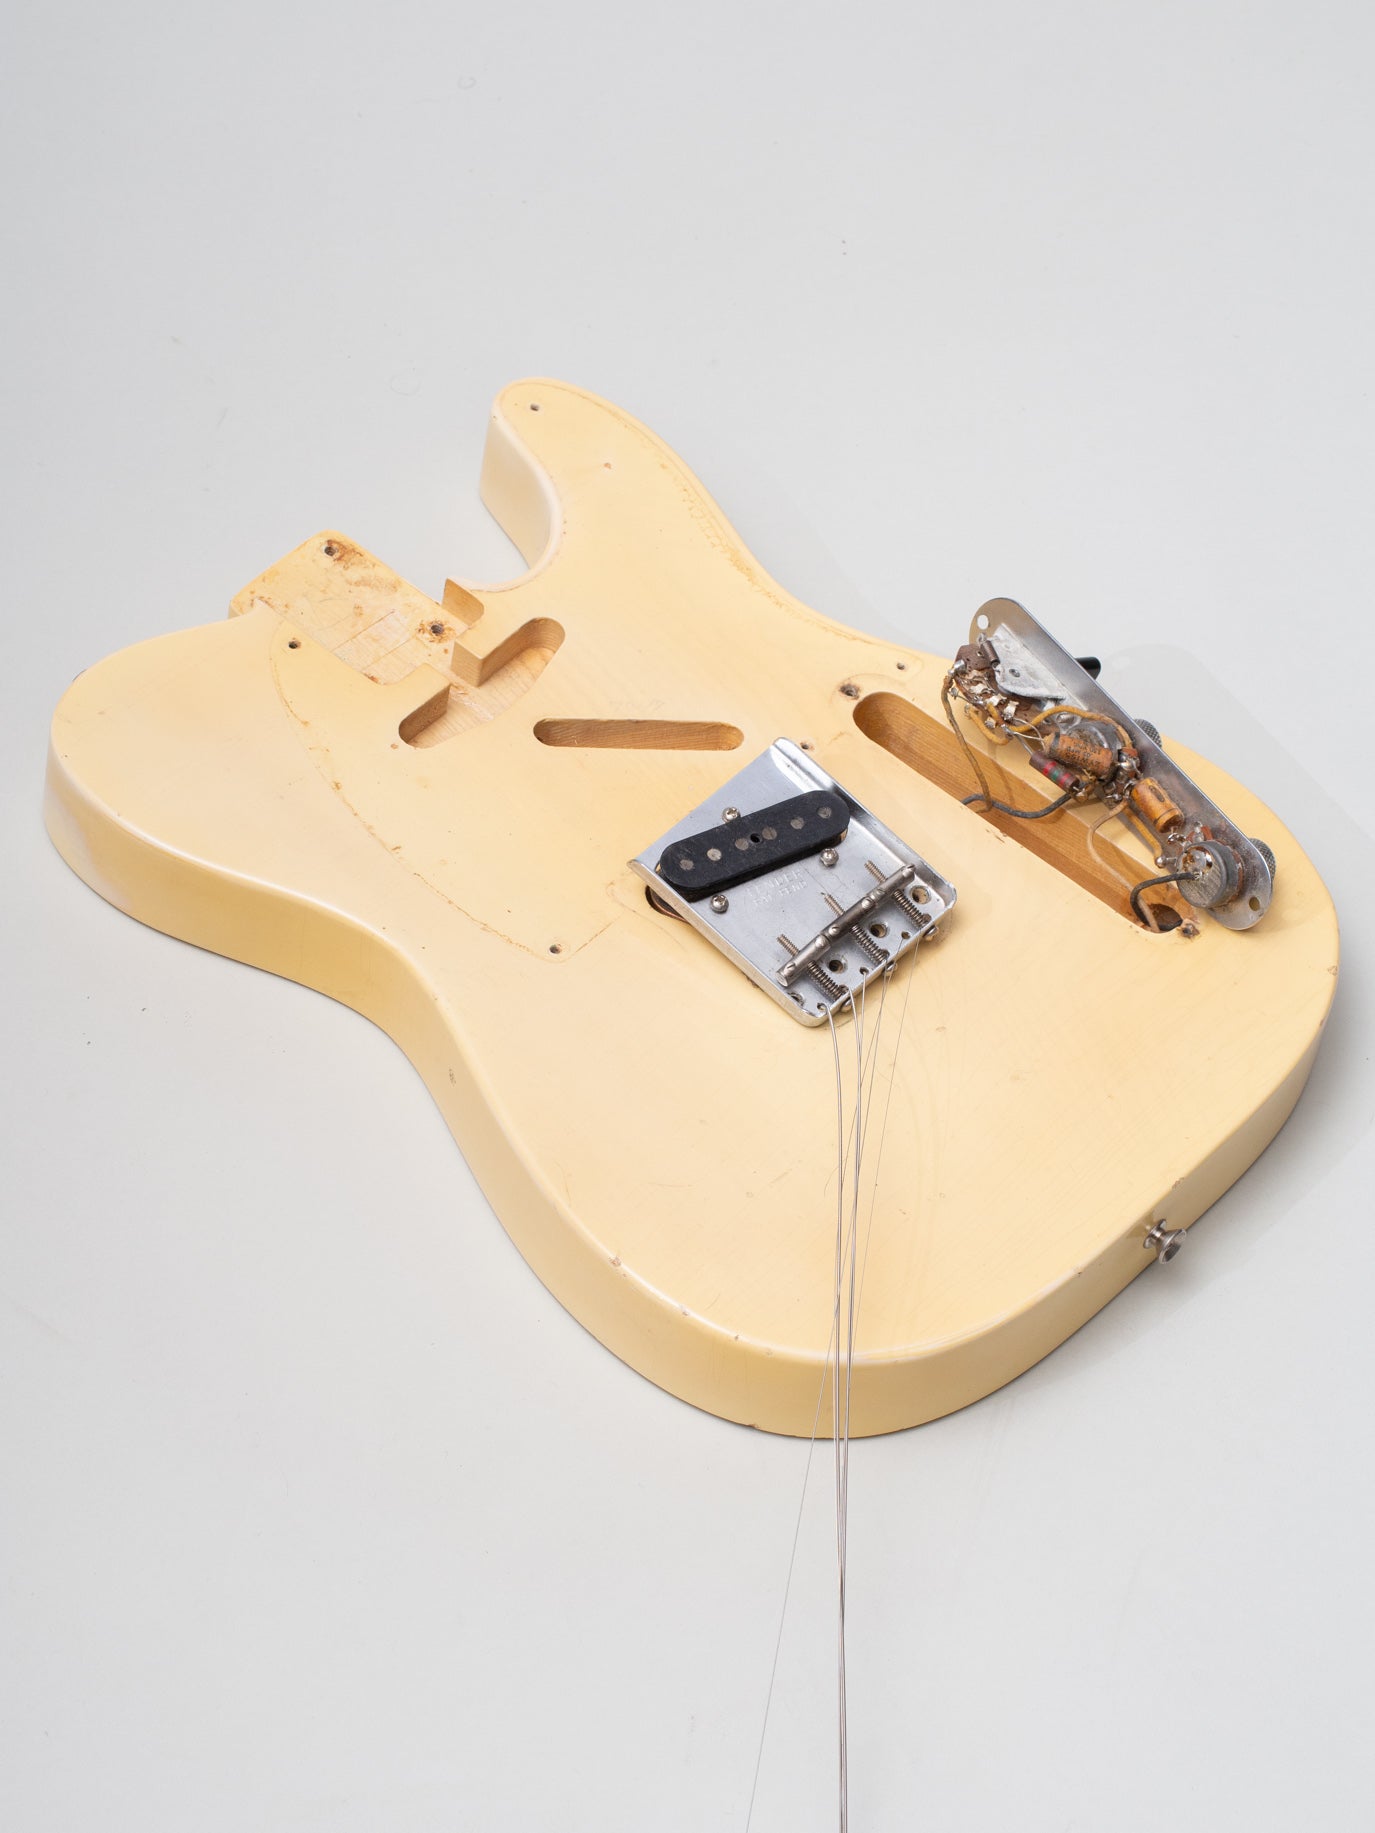 1954 Fender Esquire